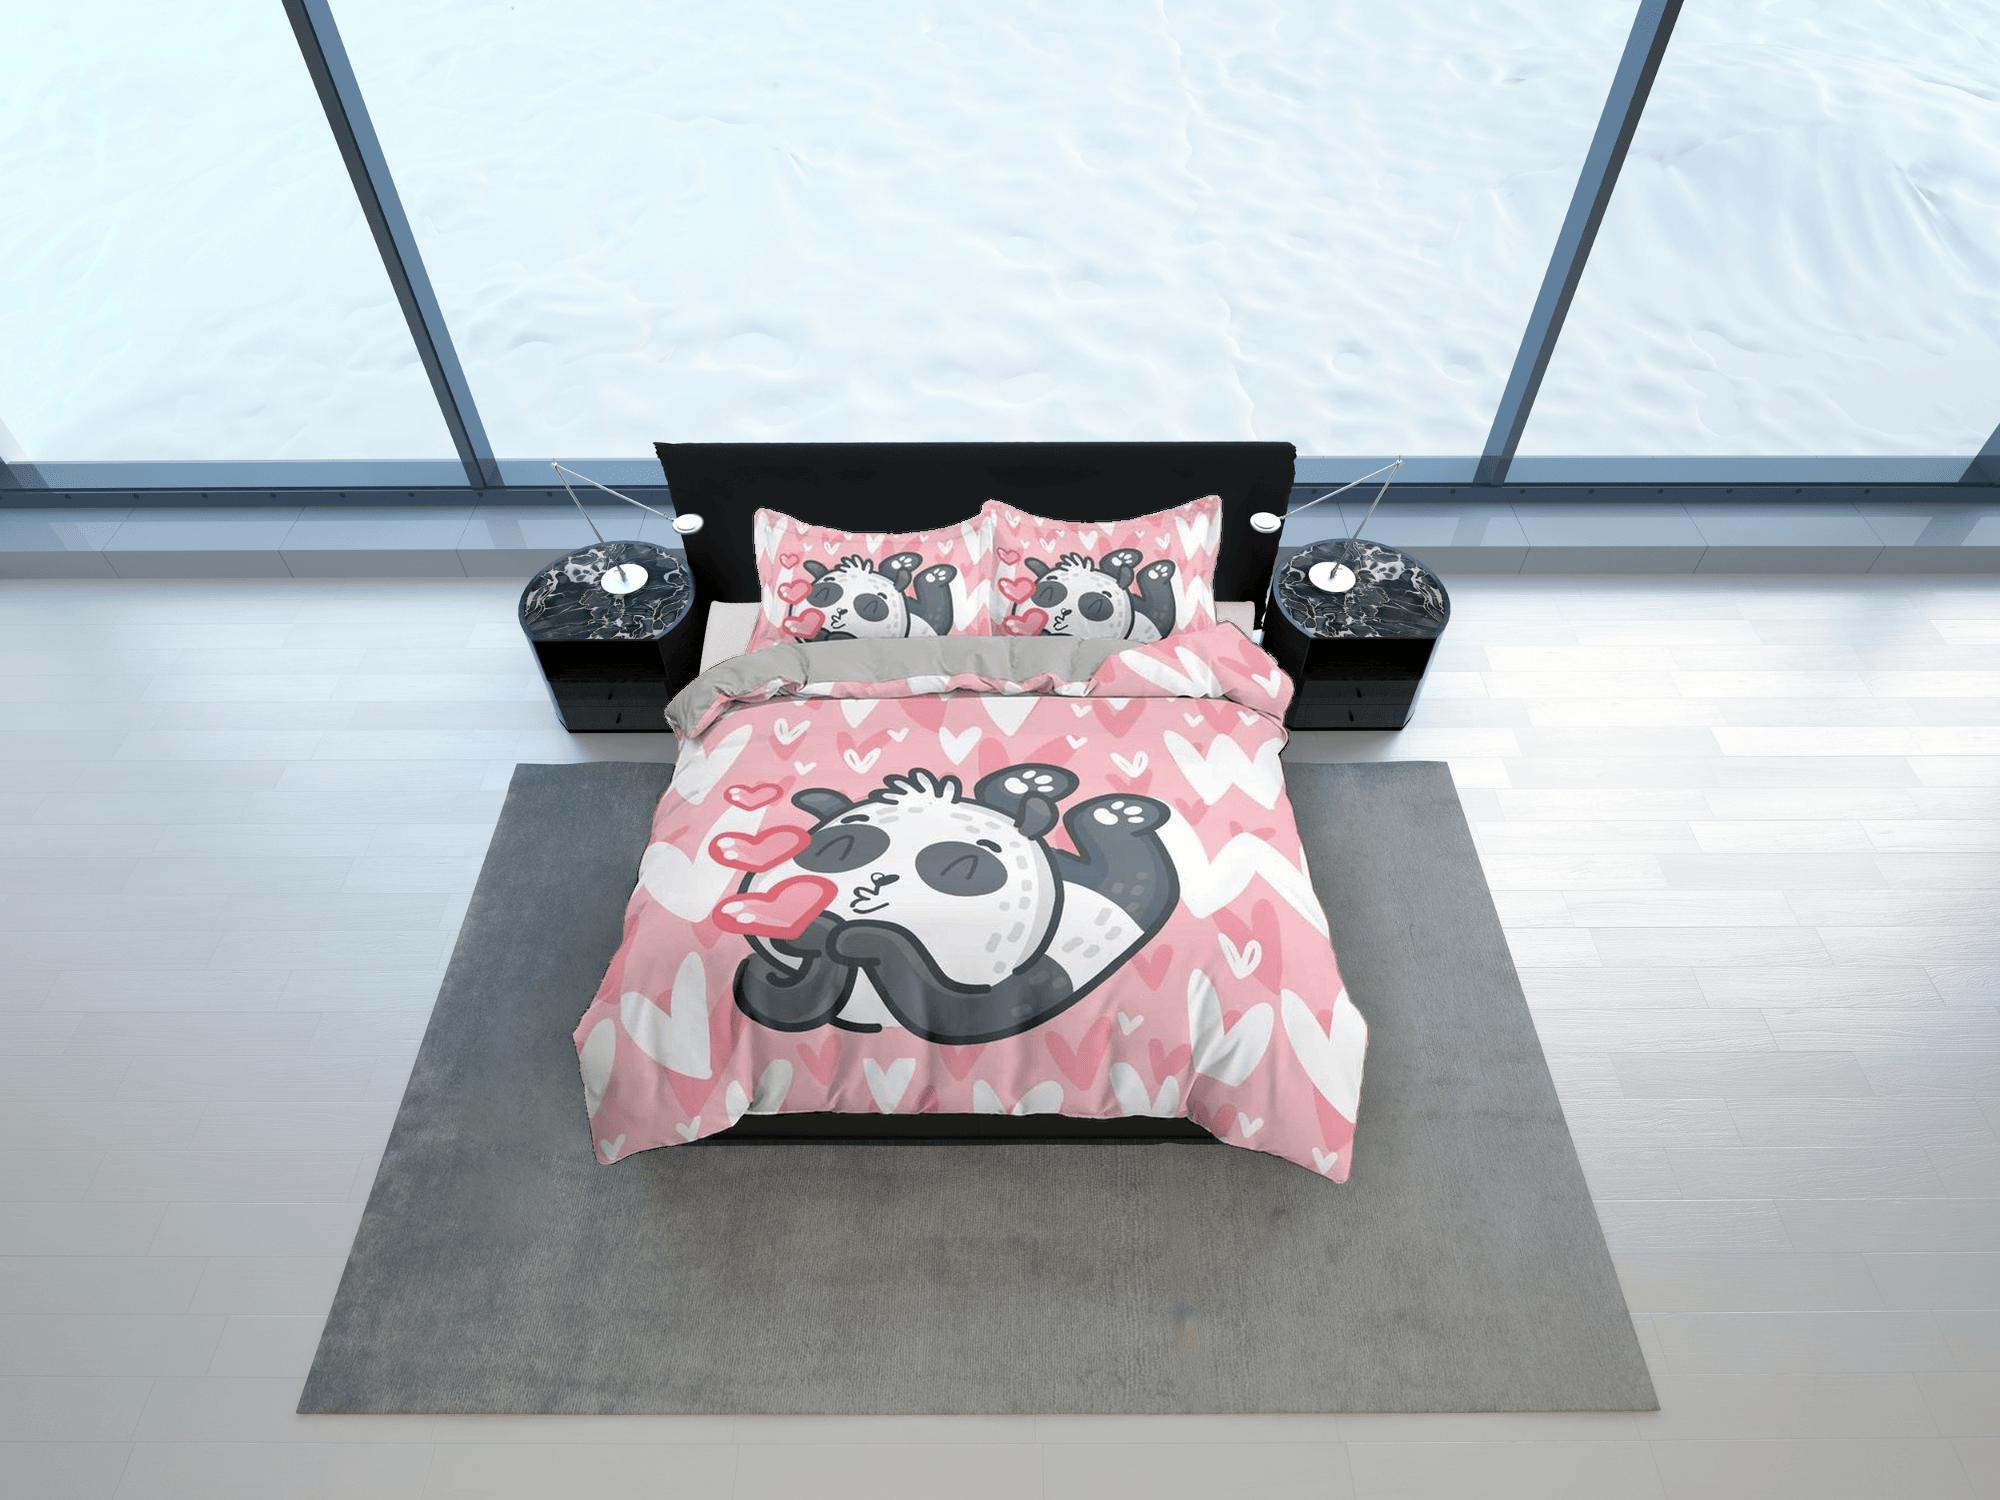 daintyduvet Kiss panda pink duvet cover kids, bedding set full, king, queen, dorm bedding, toddler bedding, aesthetic bedspread, panda lovers gift